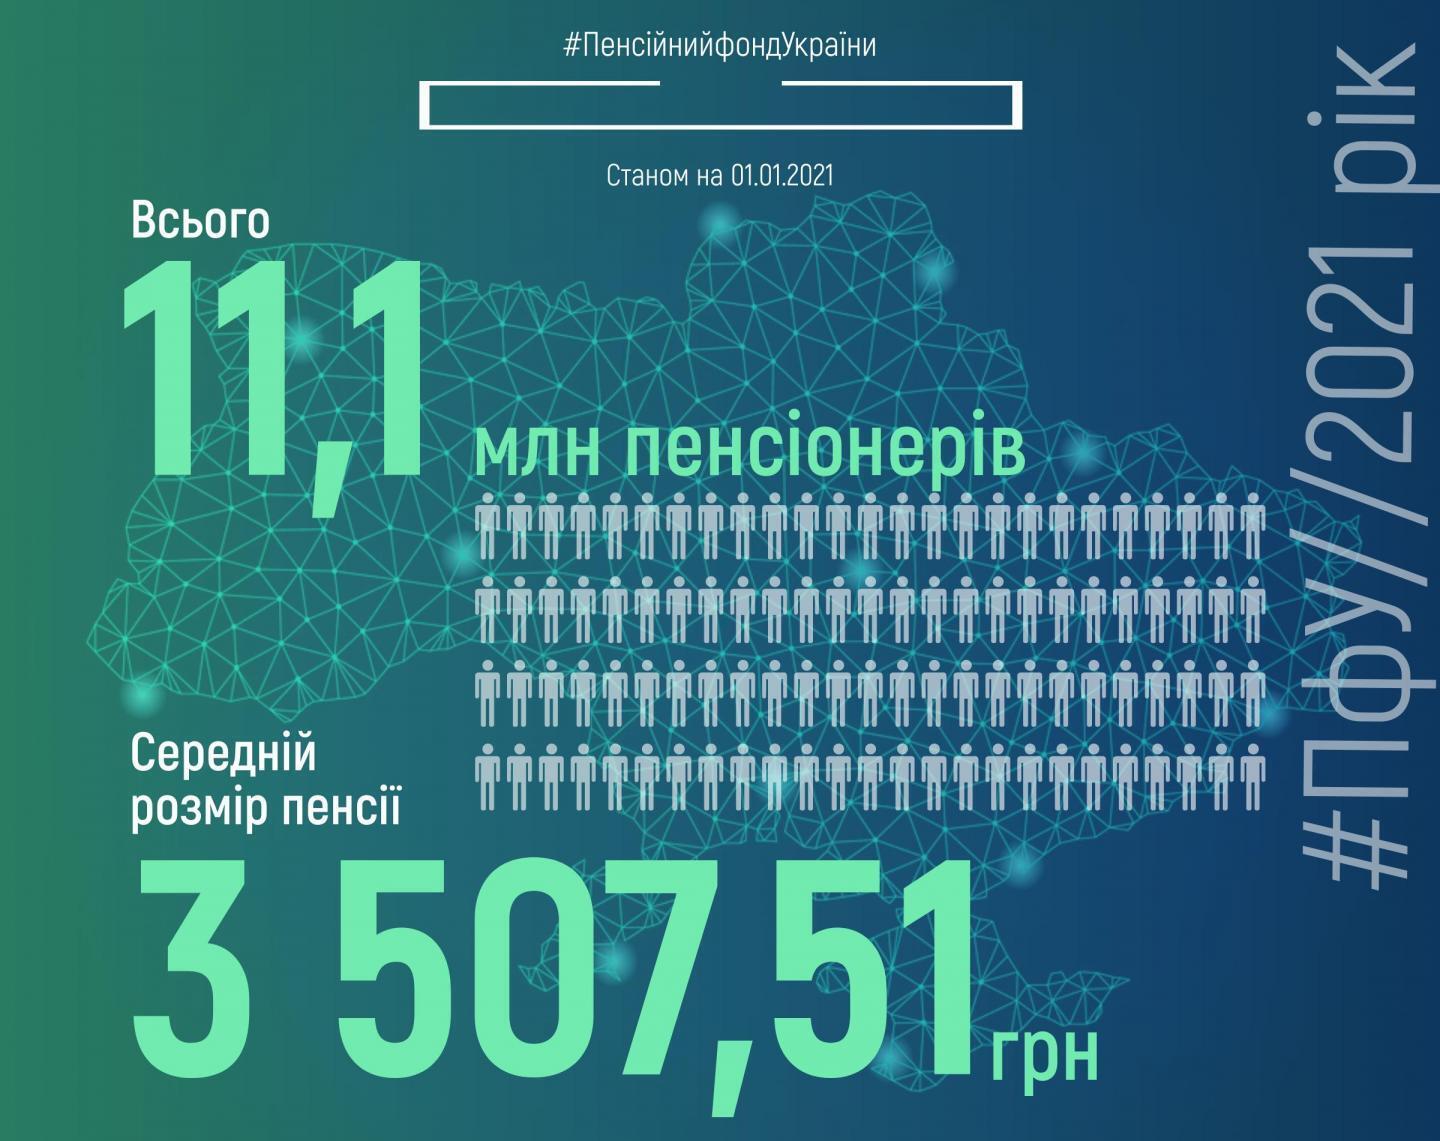 Украинцам пересчитали средней размер пенсии: сколько платят